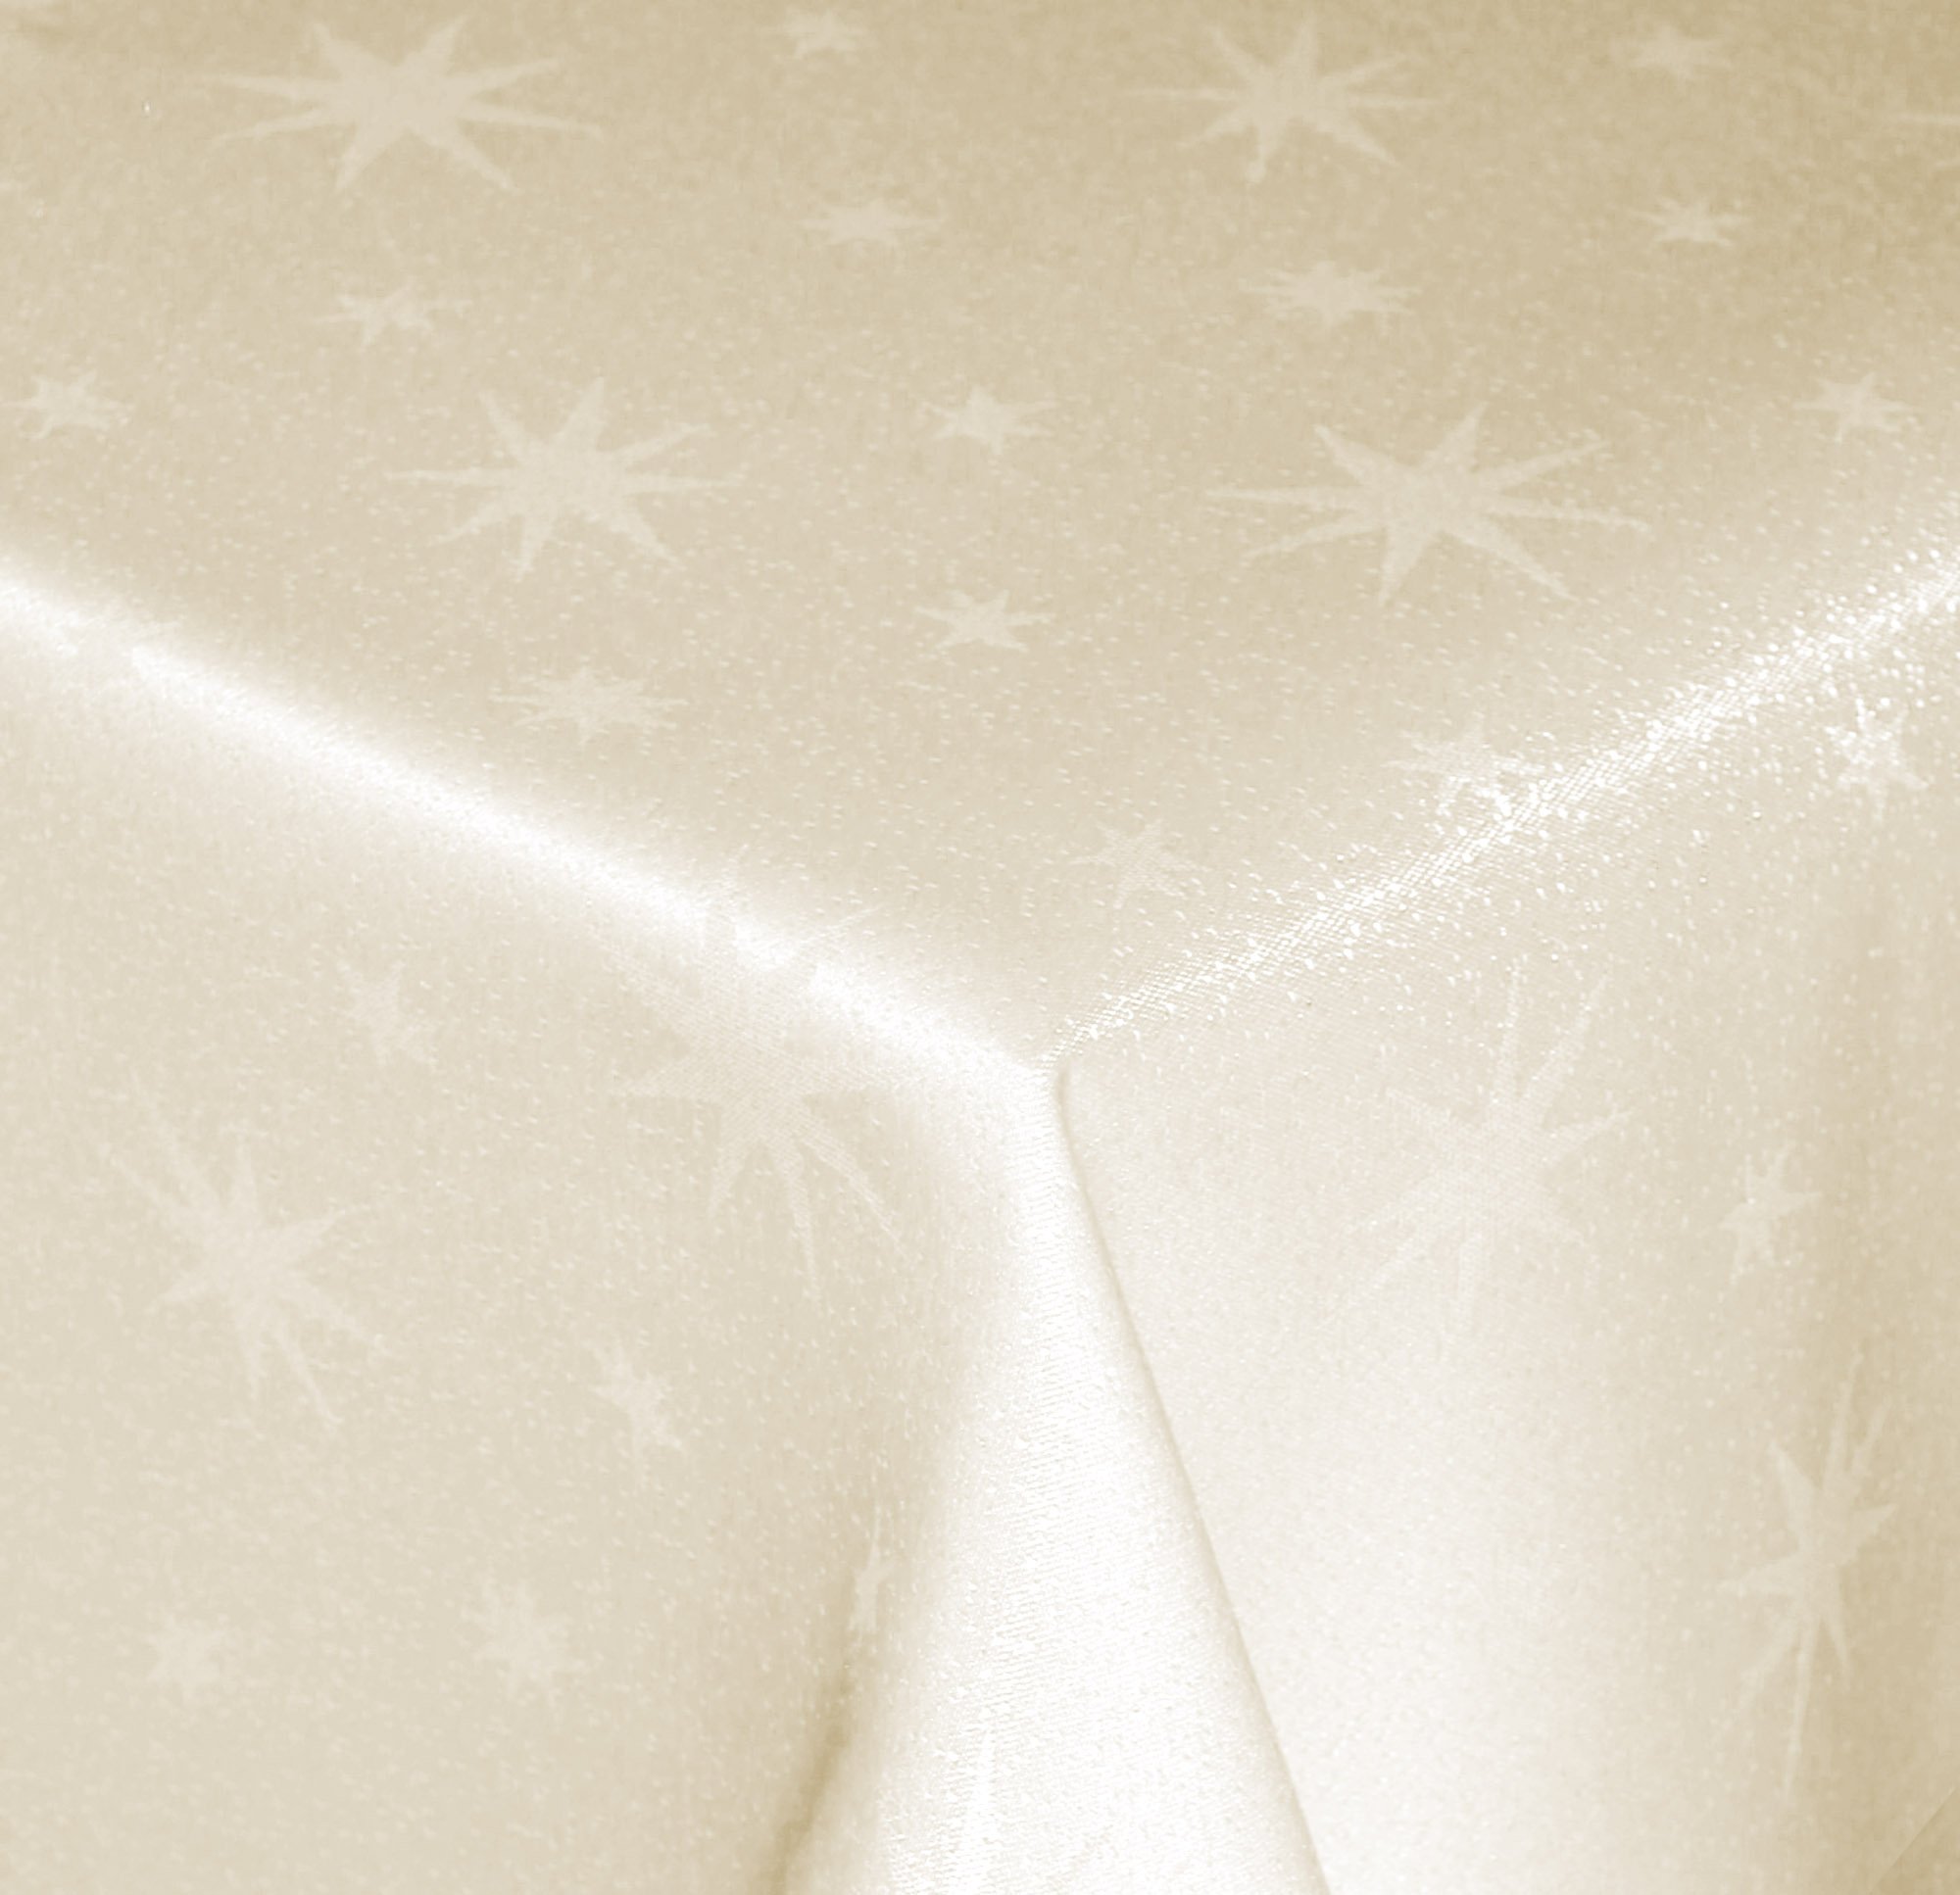 Tischdecke Weihnachten 130 x 220 cm Creme Rechteckig Weihnachtstischdecken Lurex Sterne bügelfrei knitterfrei Tischdecken Advent Weihnachtsdeko Tischdeko Herbst